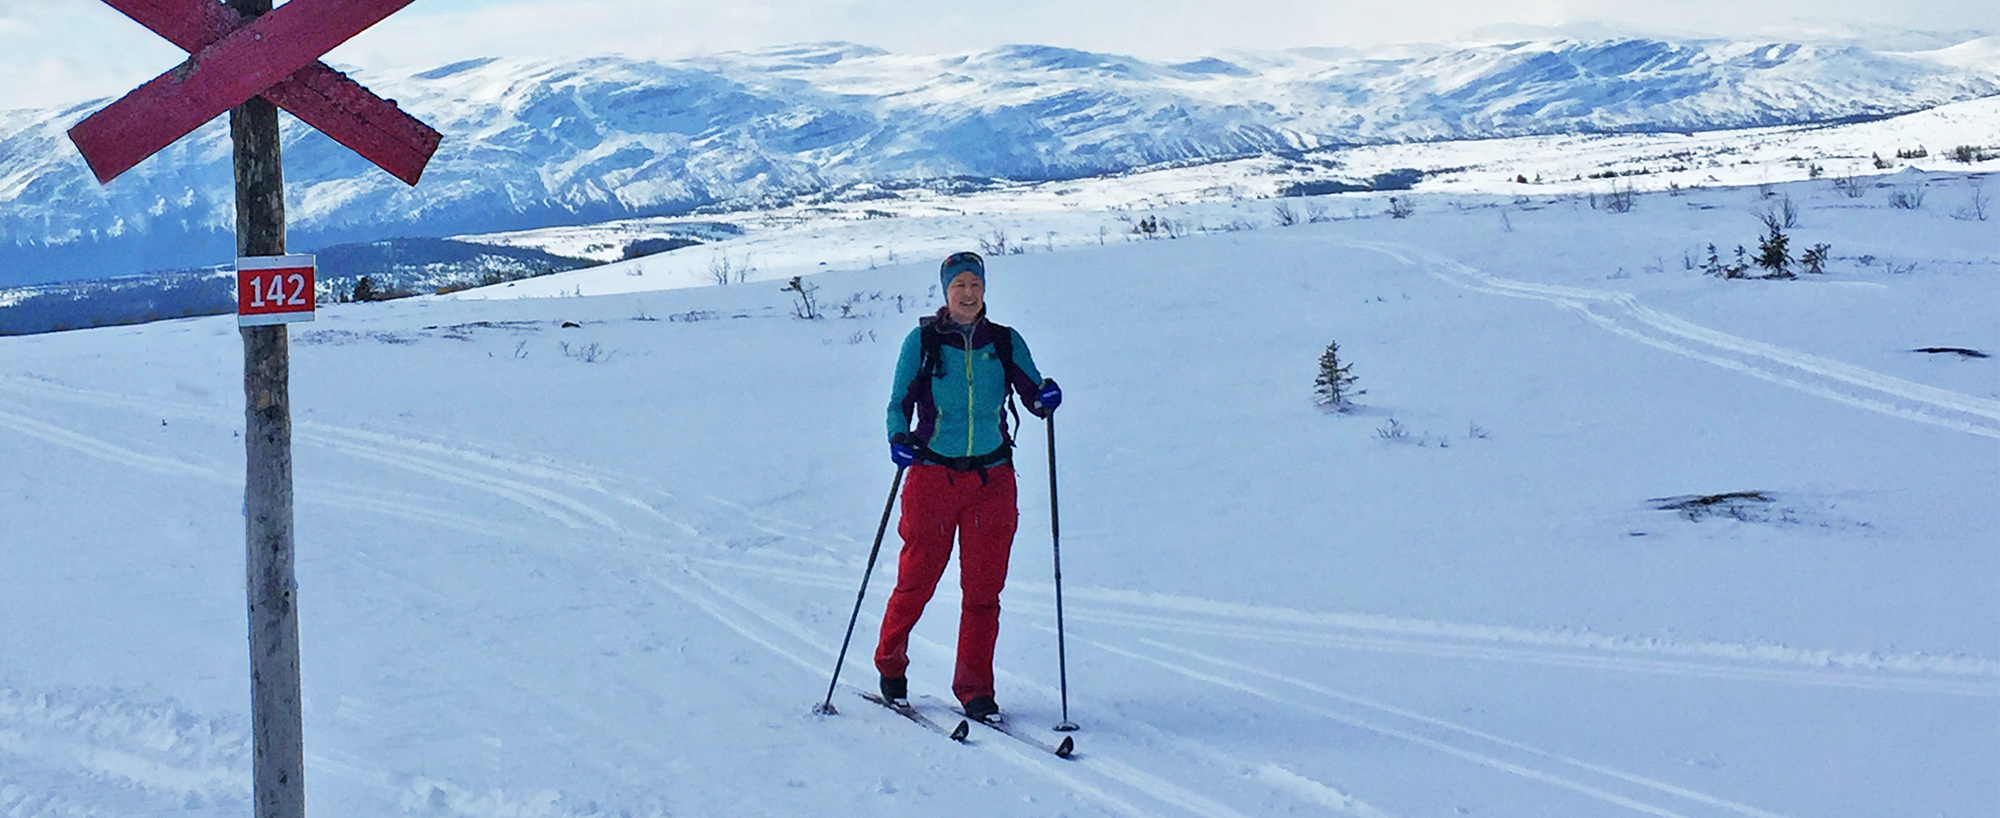 Välliste runt, i Trillevallen, bjuder på skidåkning i med- och motlut. En fjällupplevelse i världsklass i Södra Årefjällen.